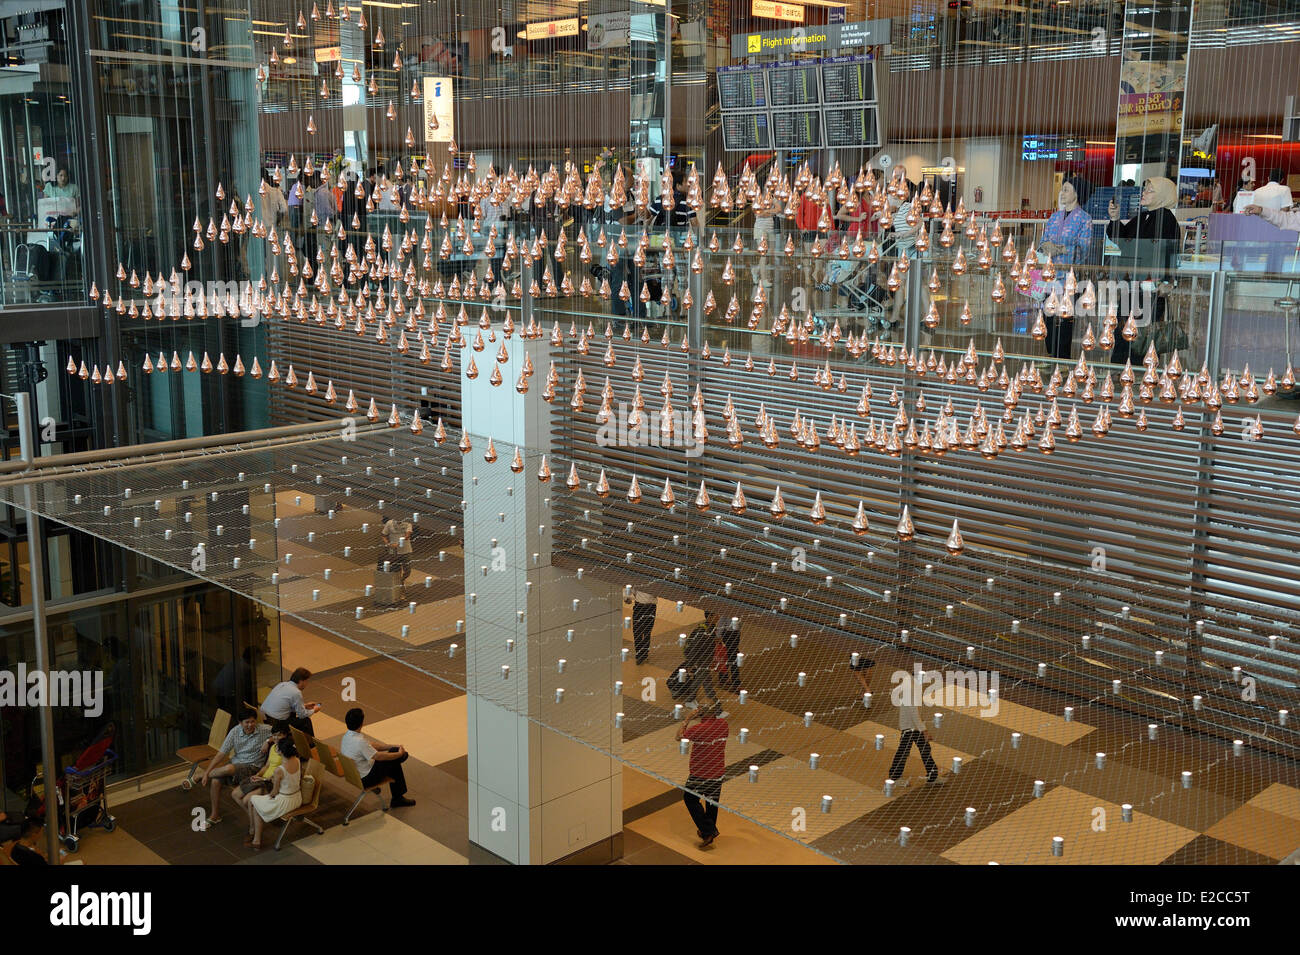 Singapur, en la Terminal 1 del aeropuerto de Changi es un relajante trabajo artístico, cinética, lluvia, por Joachim Sauter de ART + COM y tener más de 1216 gotas de bronce suspendidos en el aire que se mueve en una coreografía sincronizada Foto de stock